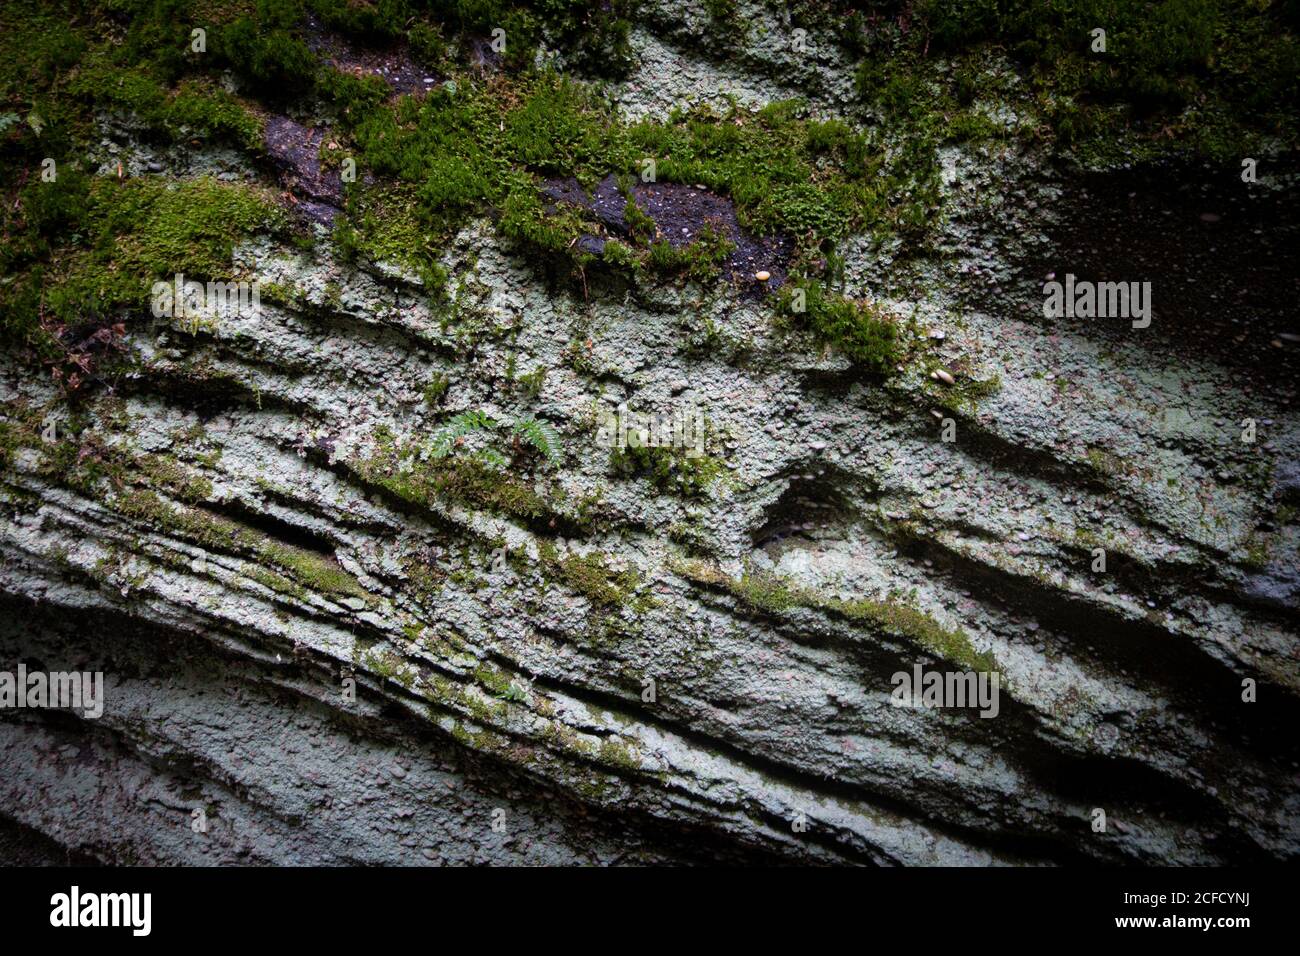 Mousse sur les rochers au parc panoramique de Panama Rocks, comté de Chautauqua, New York, États-Unis - une ancienne forêt pétrifiée de conglomérat de quartz Banque D'Images